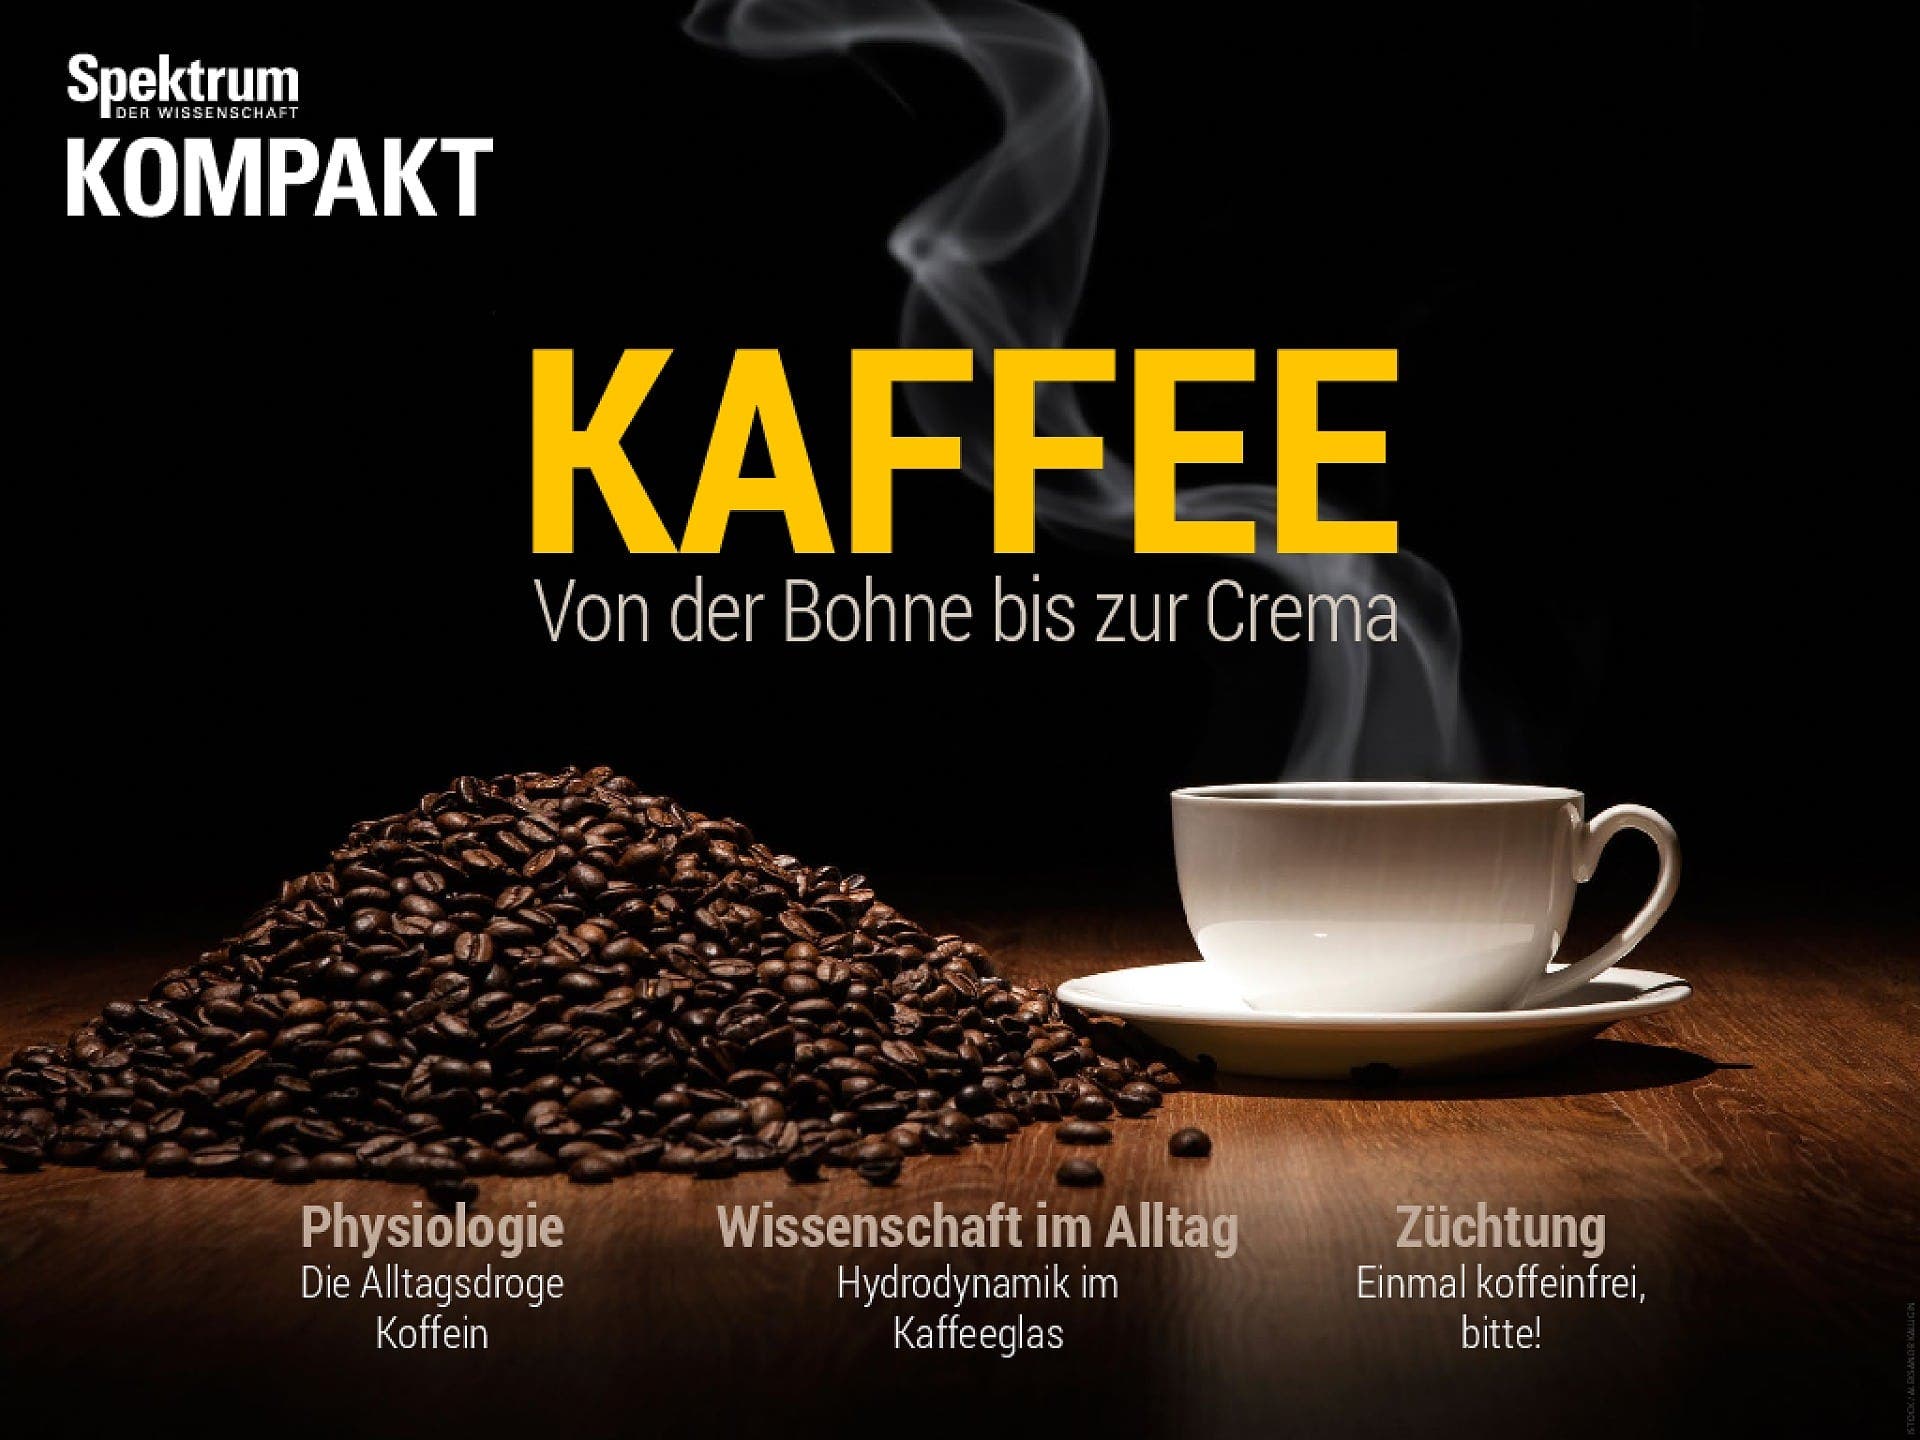 Kaffee - Von der Bohne bis zur Crema